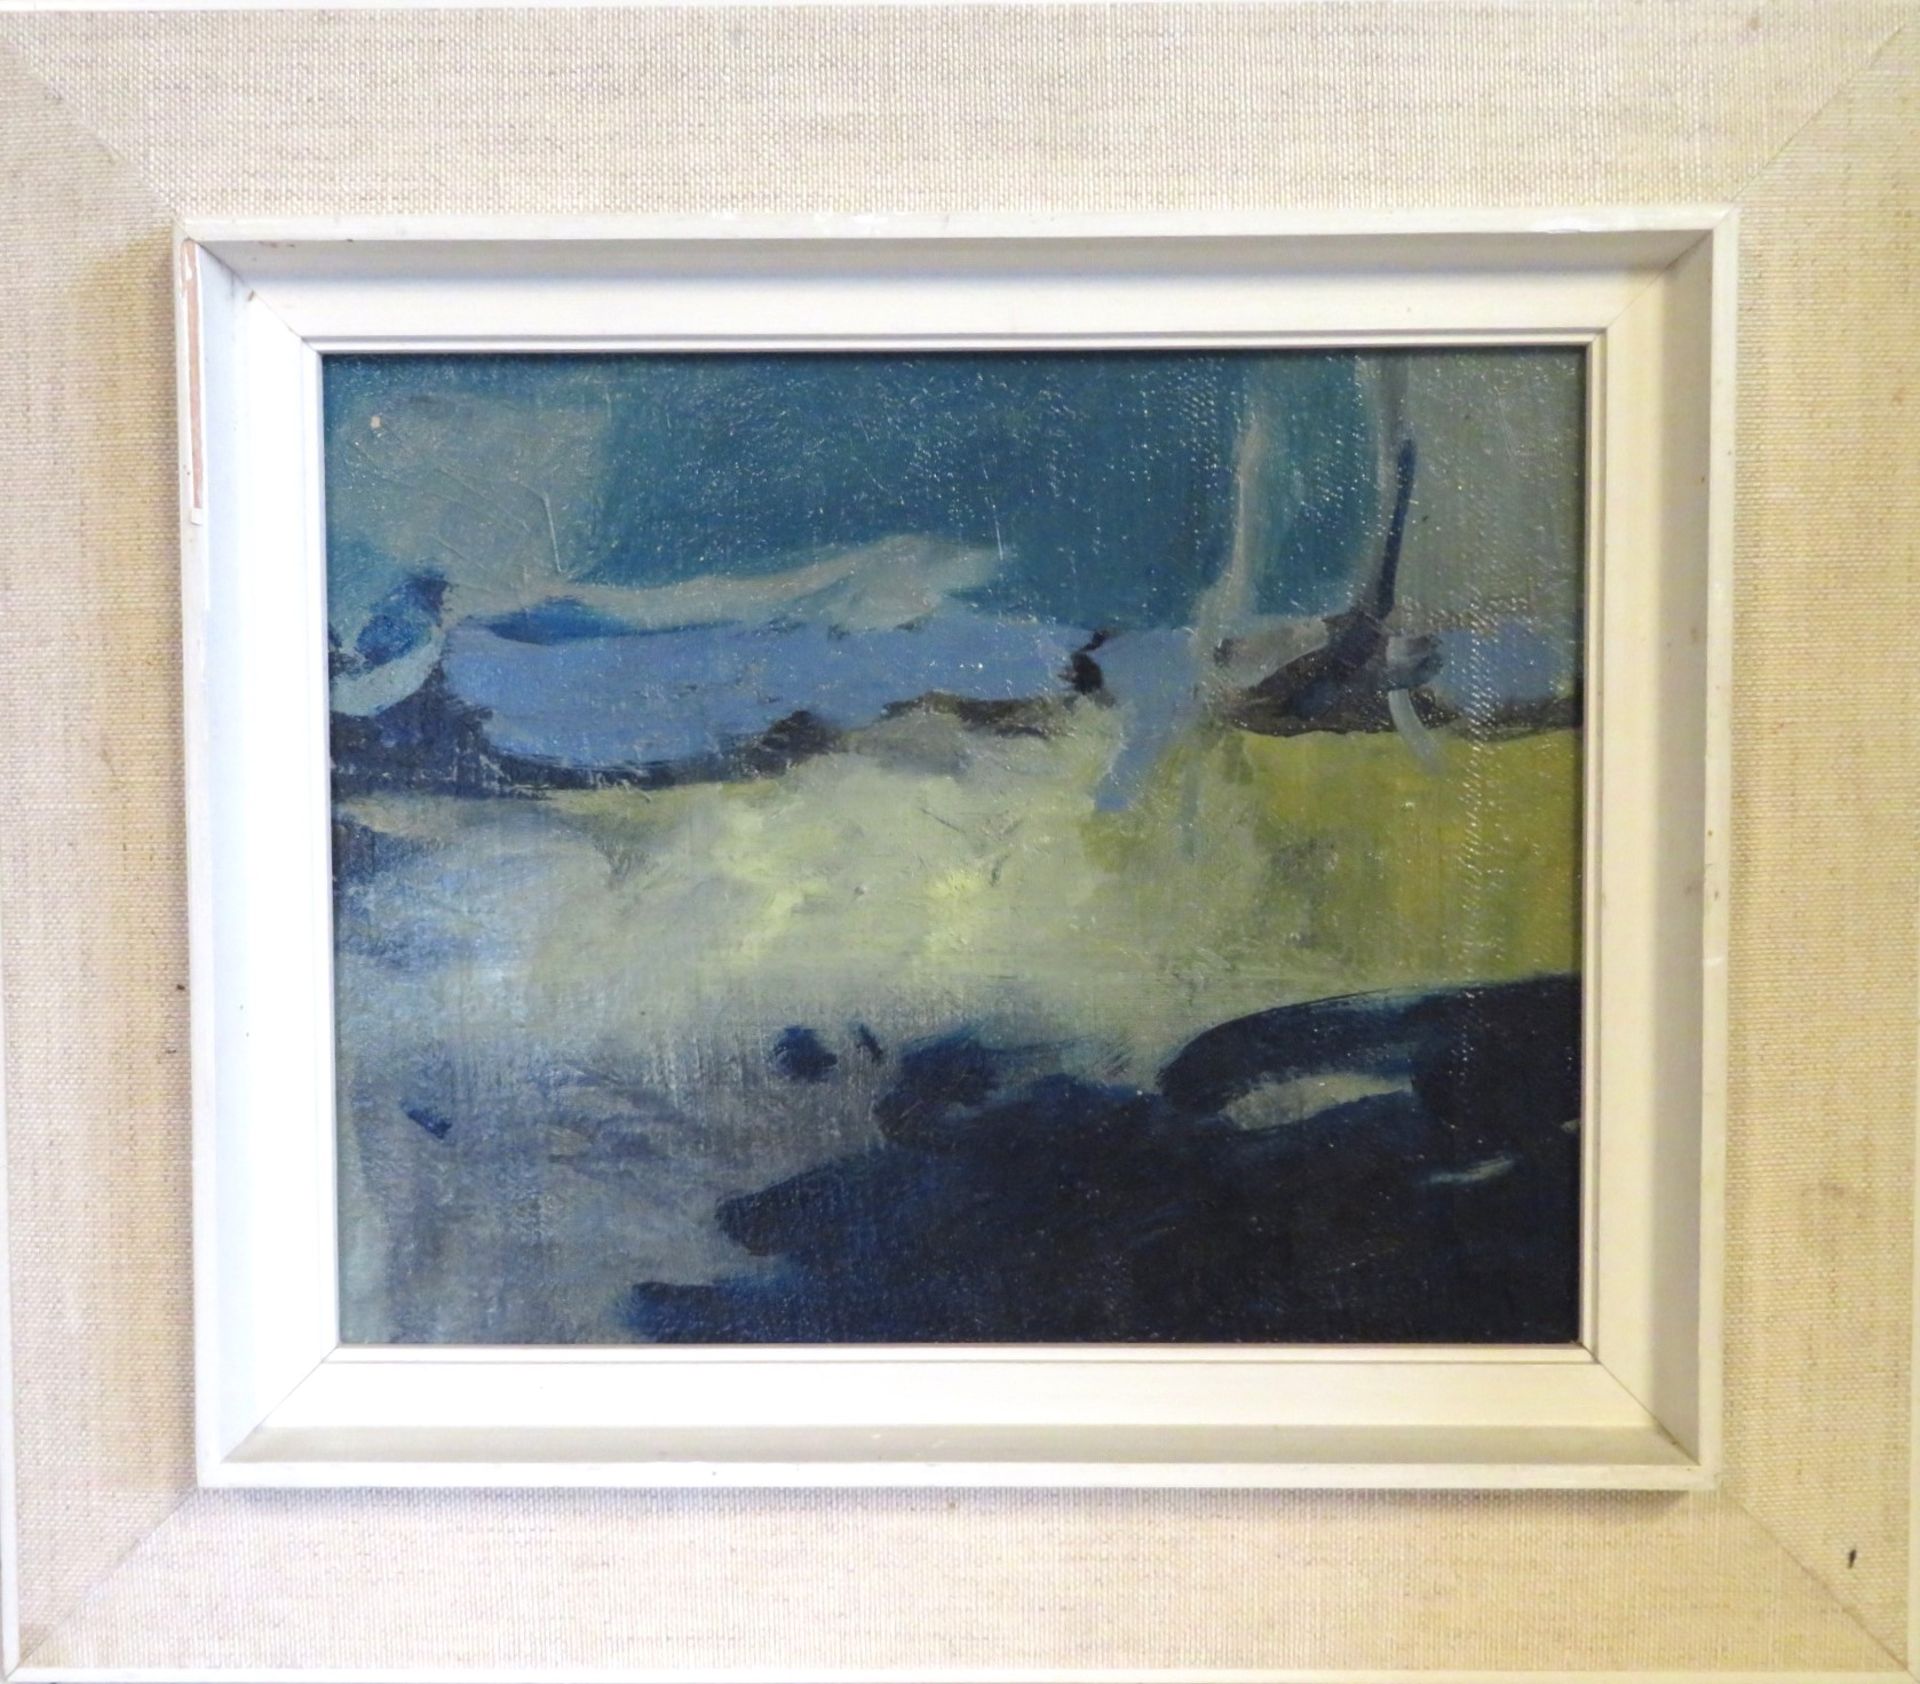 Unbekannt, 1. Hälfte 20. Jahrhundert, "Moderne Komposition in Blautönen", Öl/Leinwand, 31 x 25 cm,  - Bild 2 aus 2